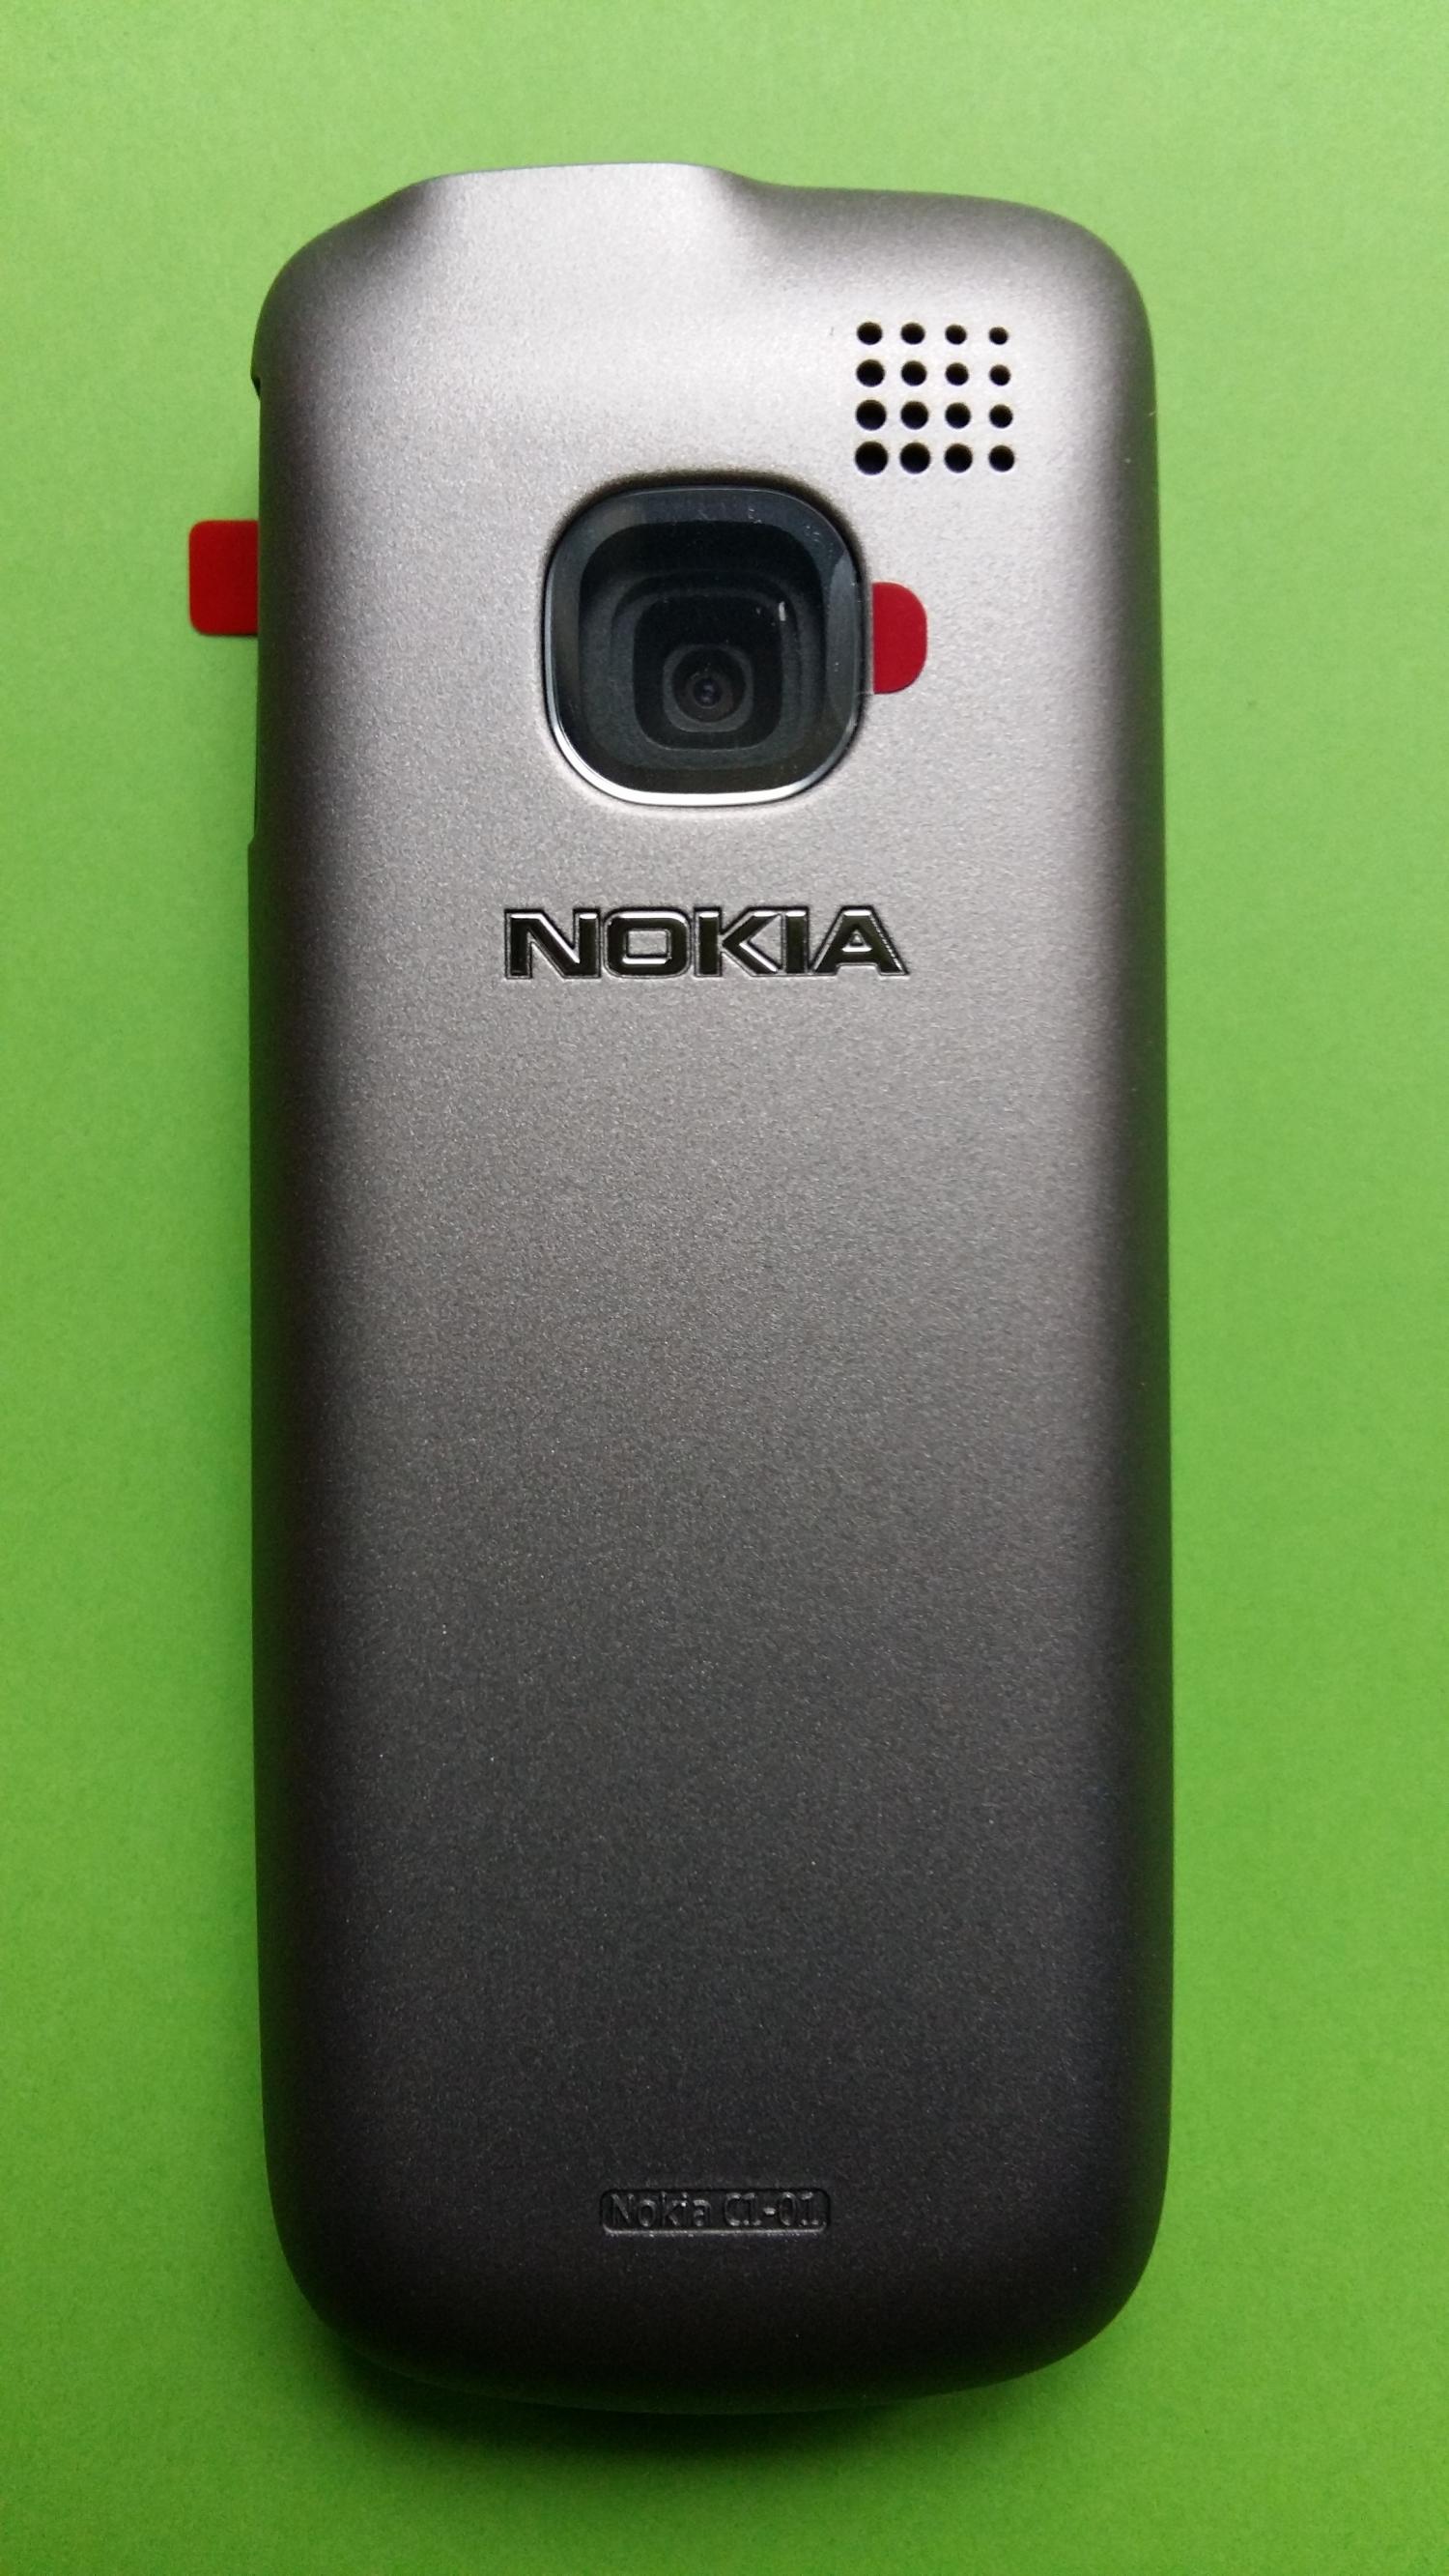 image-7308728-Nokia C1-01 (1)2.jpg